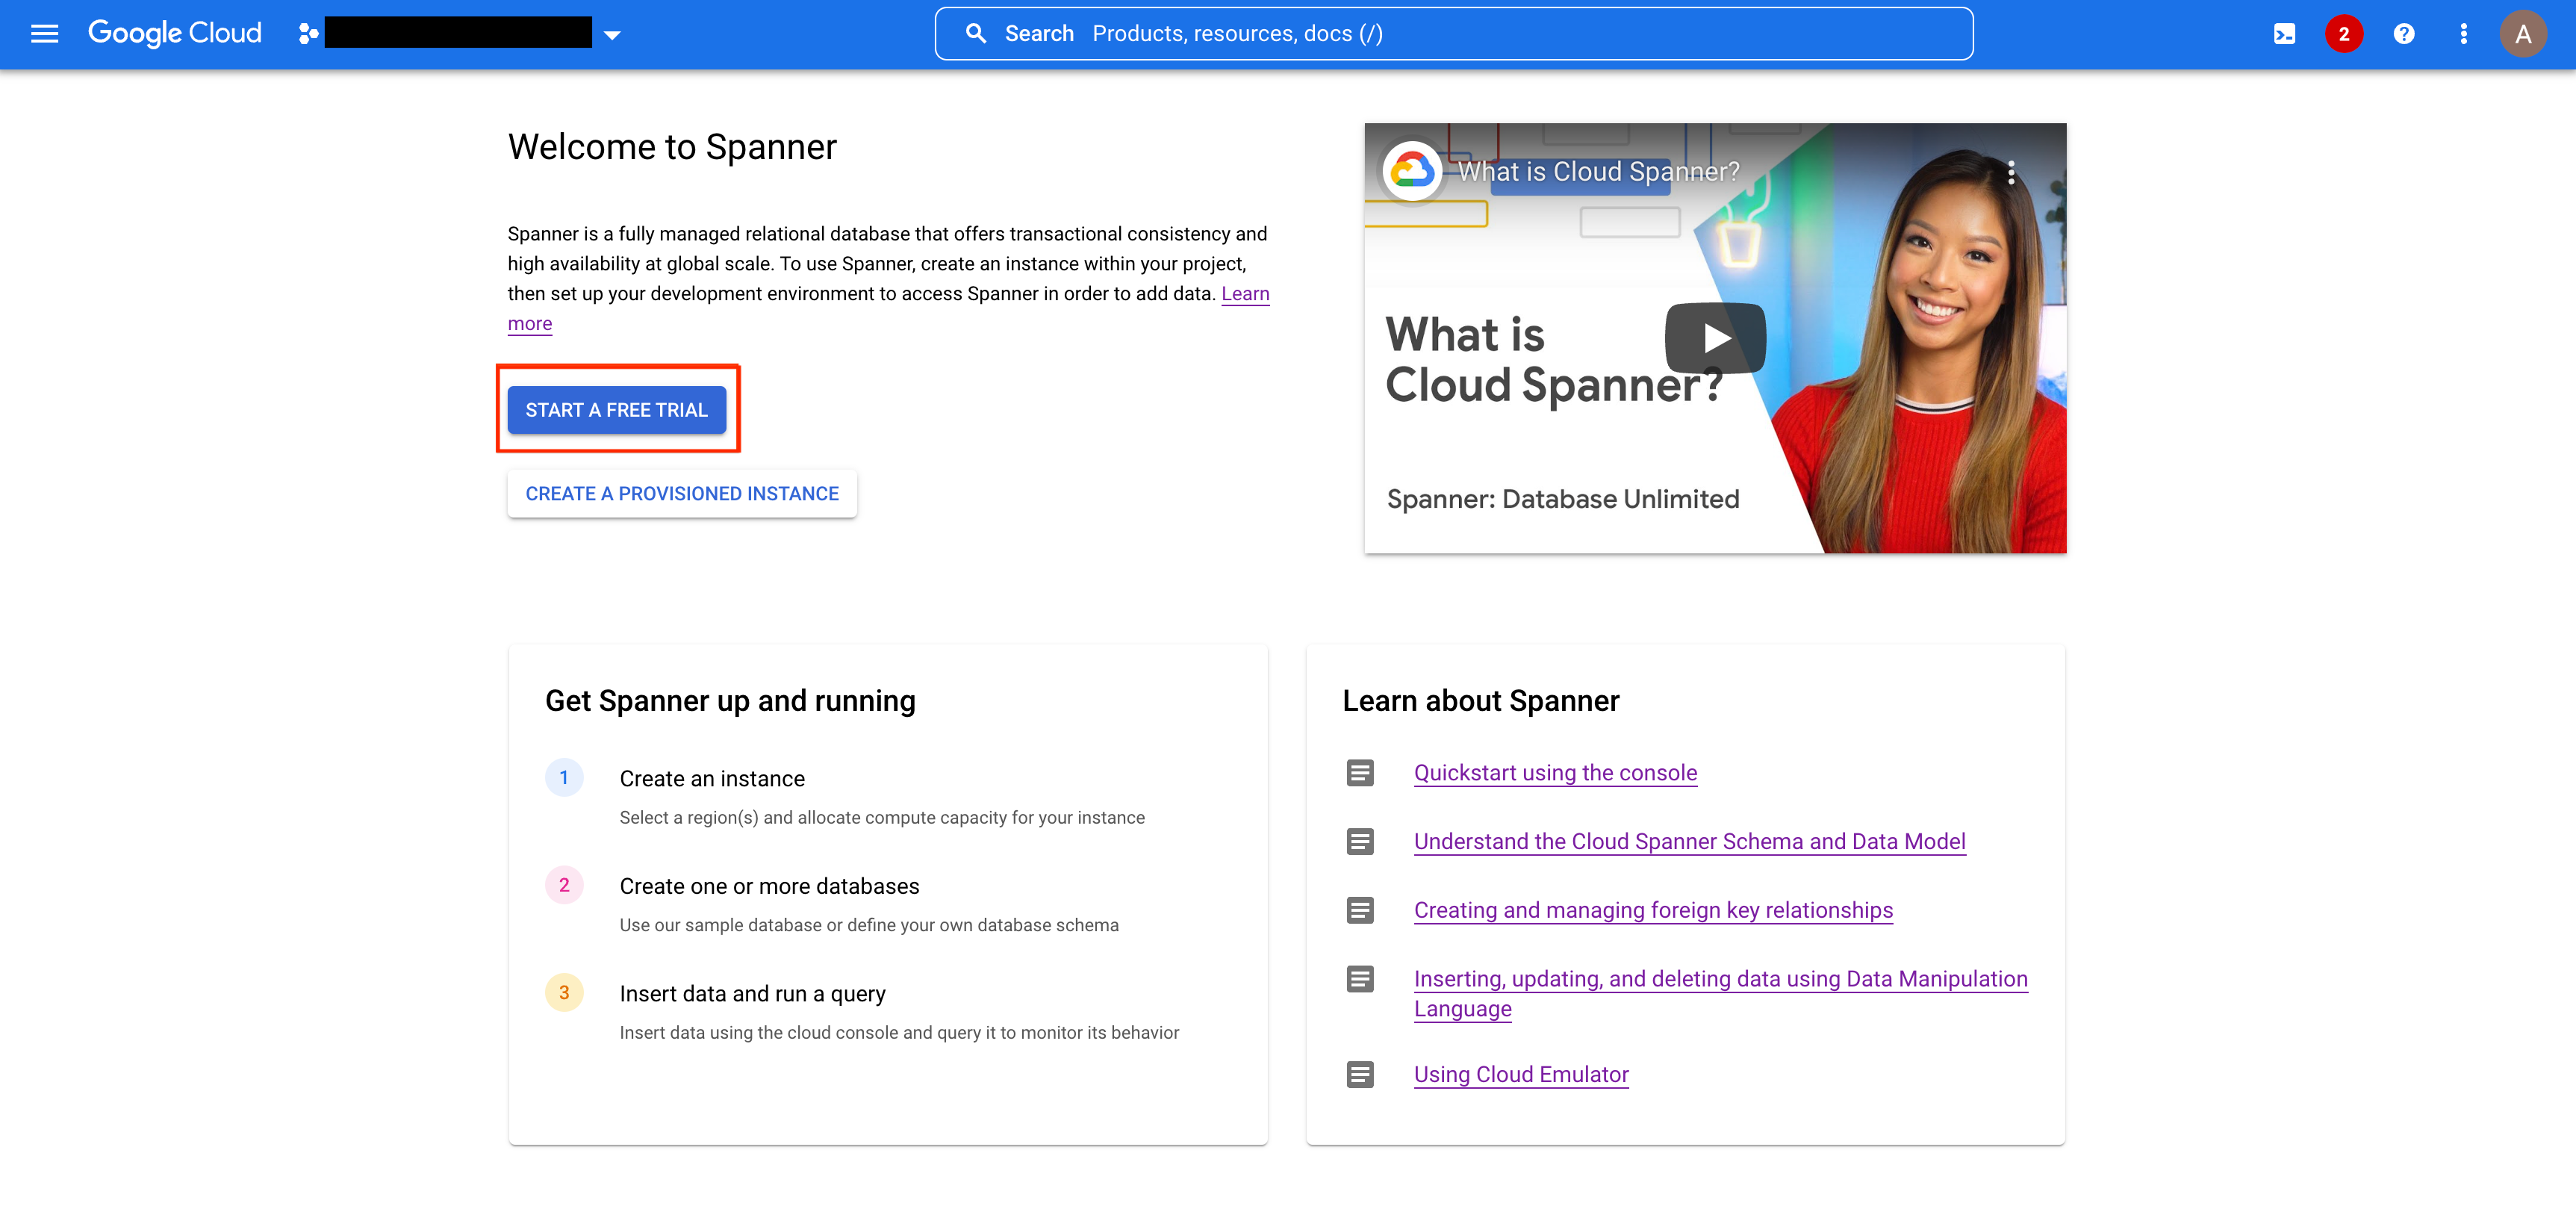 Captura de tela da página de destino do Spanner no console do Google Cloud, destacando o botão "Iniciar um teste gratuito".